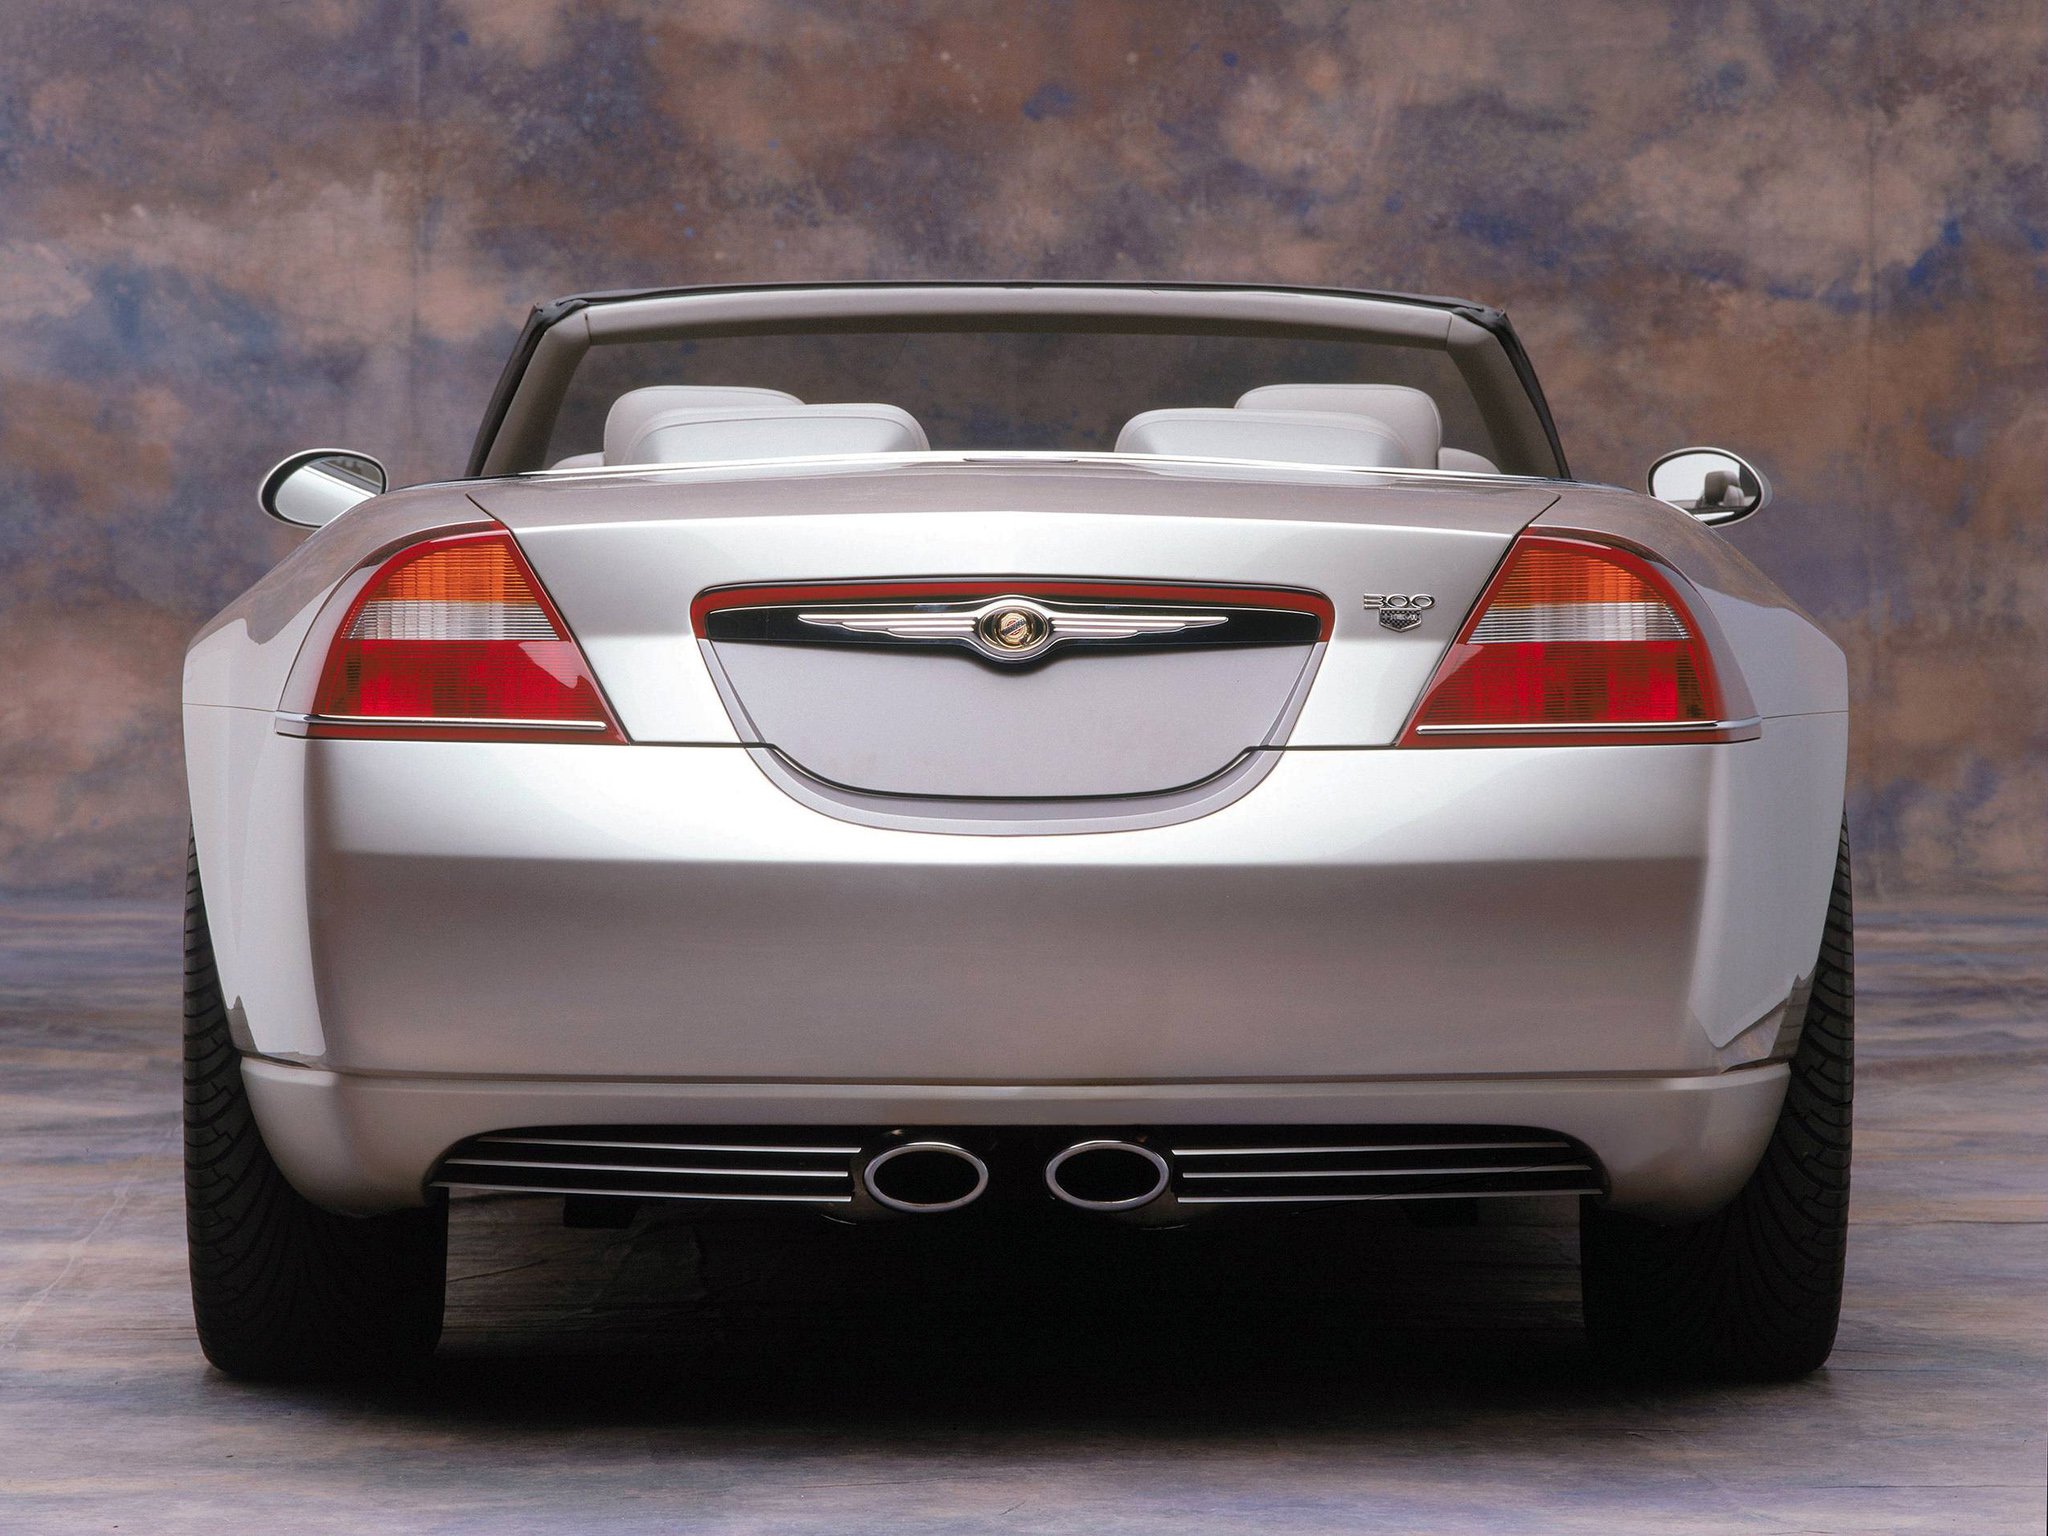 2000, Chrysler, 300, Hemi, C, Concept Wallpaper